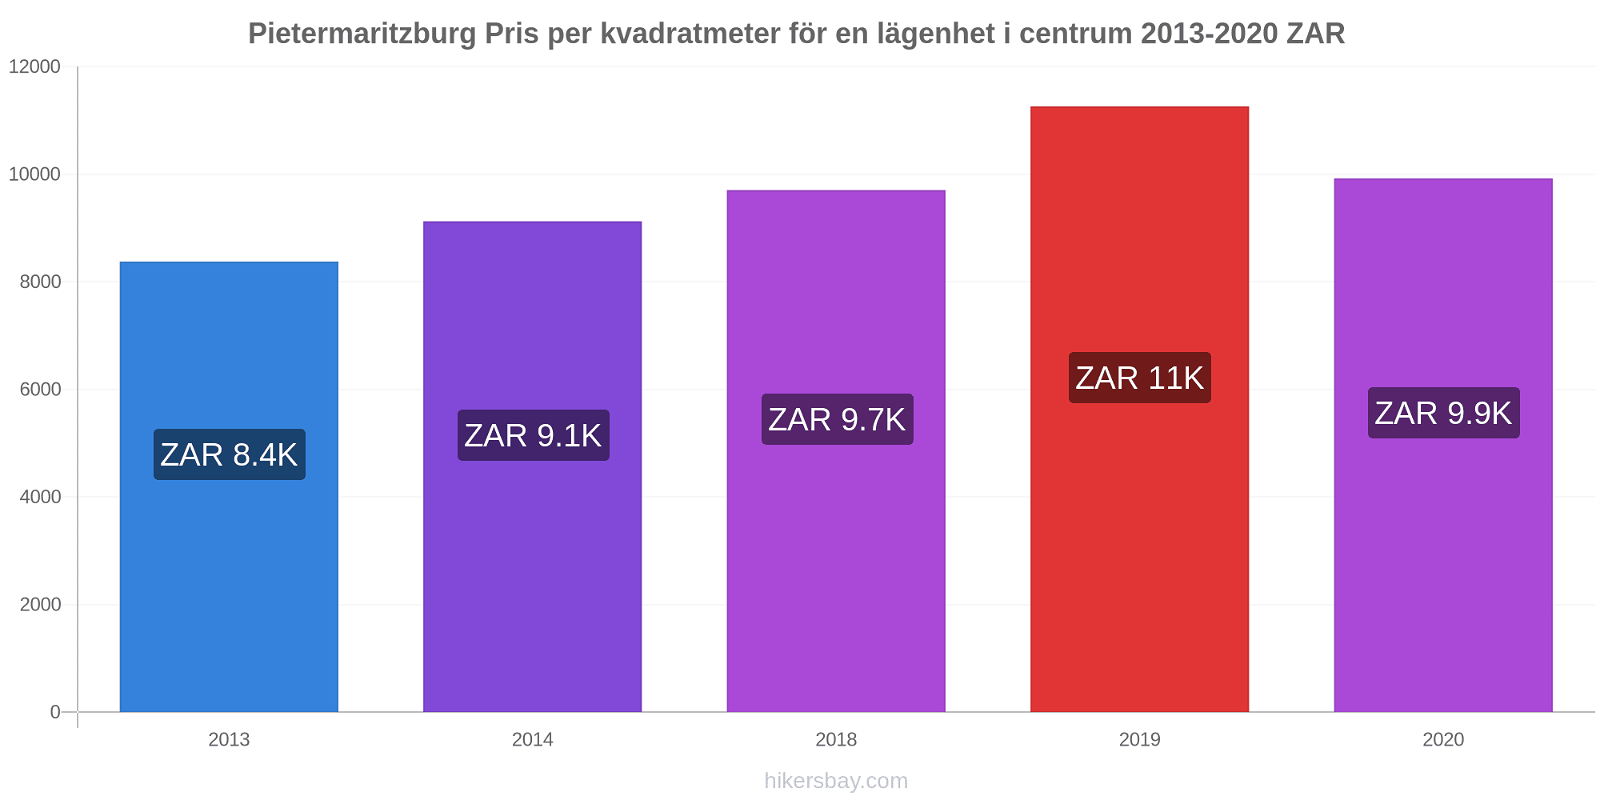 Pietermaritzburg prisförändringar Pris per kvadratmeter för en lägenhet i centrum hikersbay.com